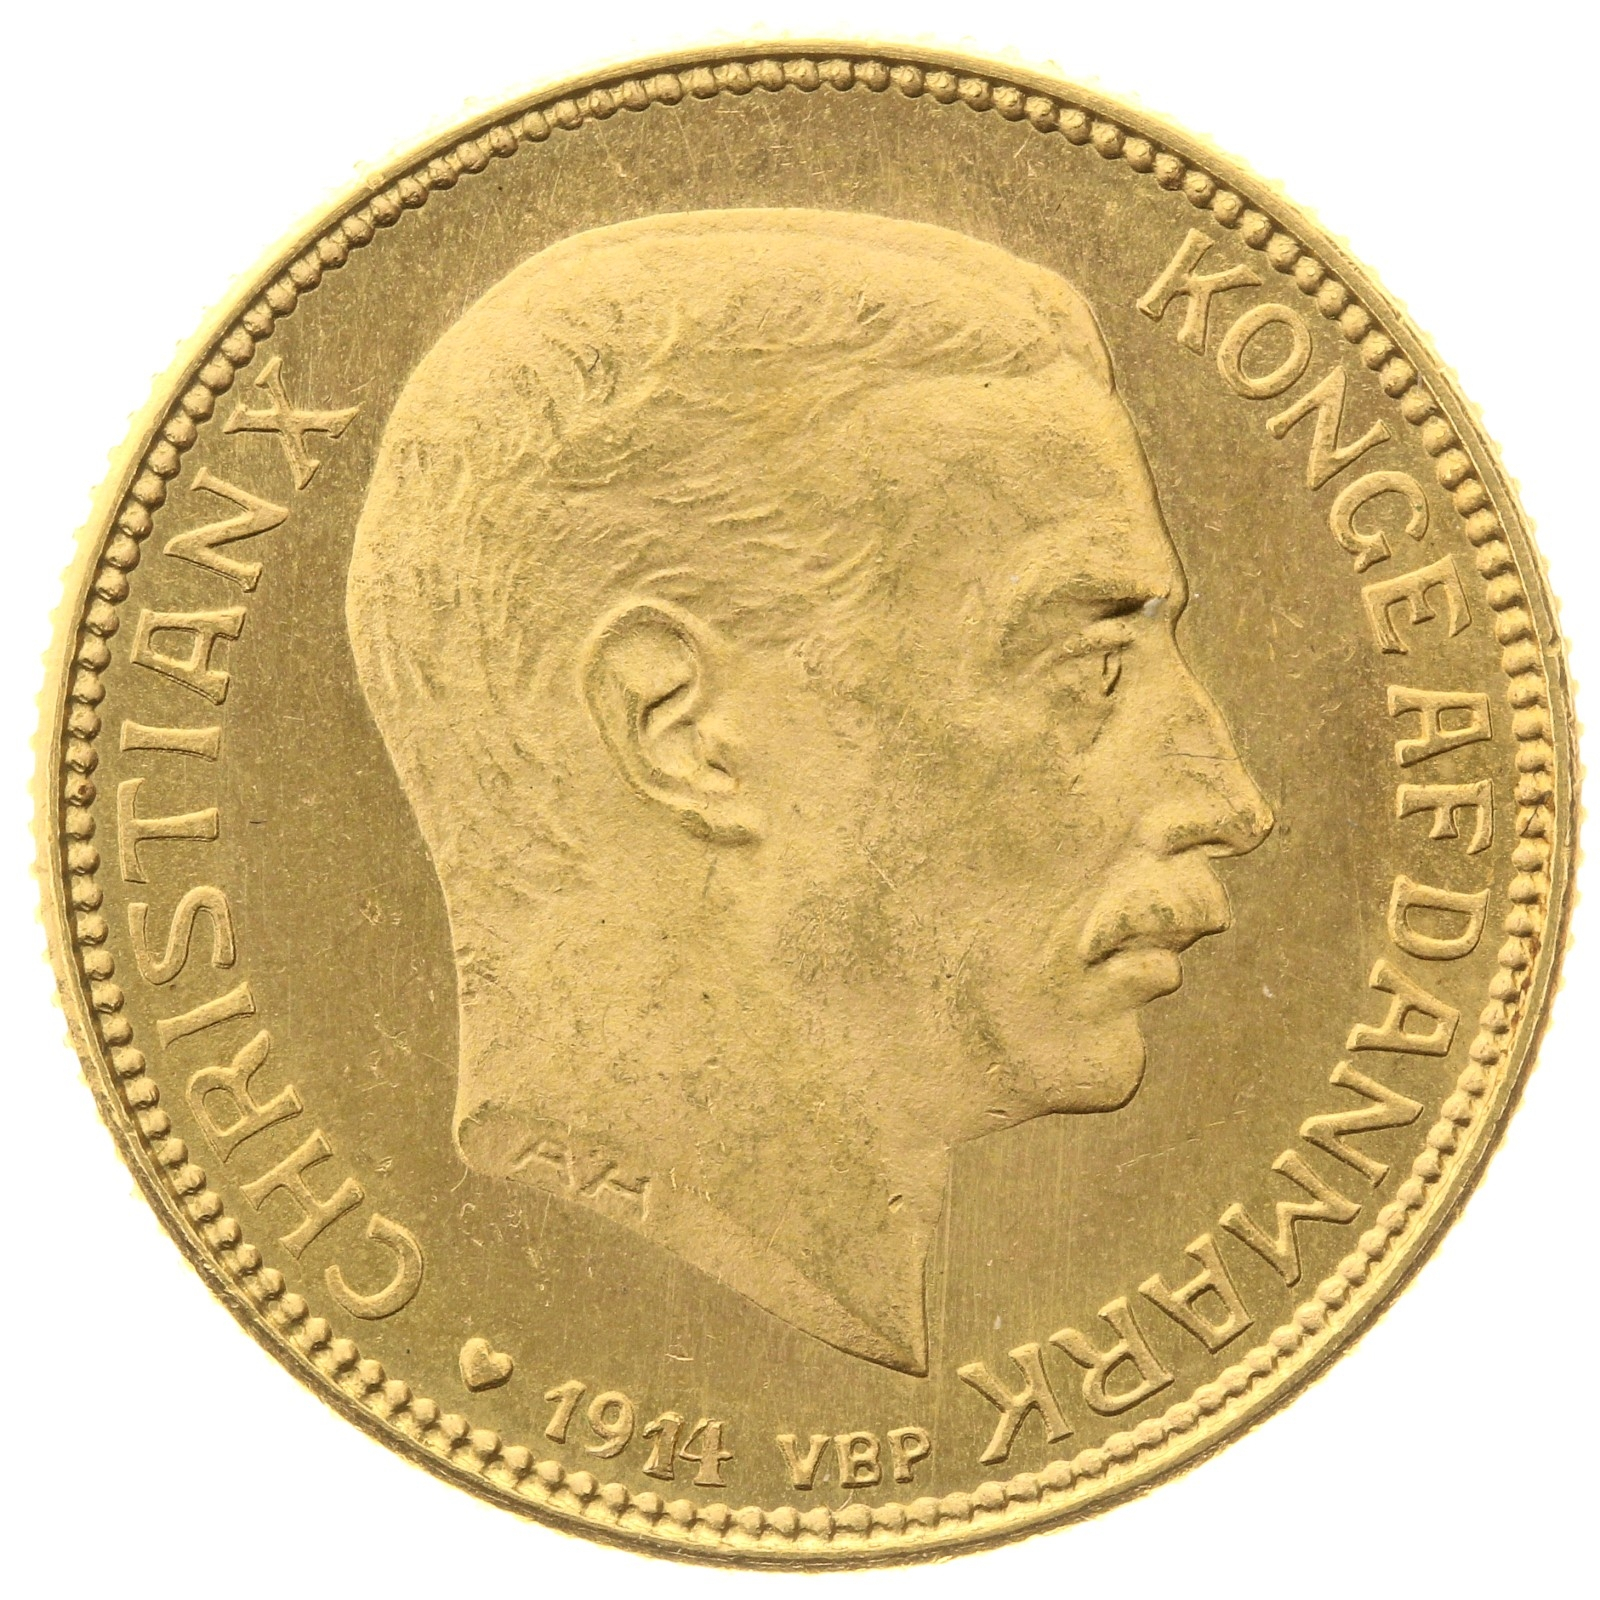 Denmark - 20 kroner - 1914 - Christian X 